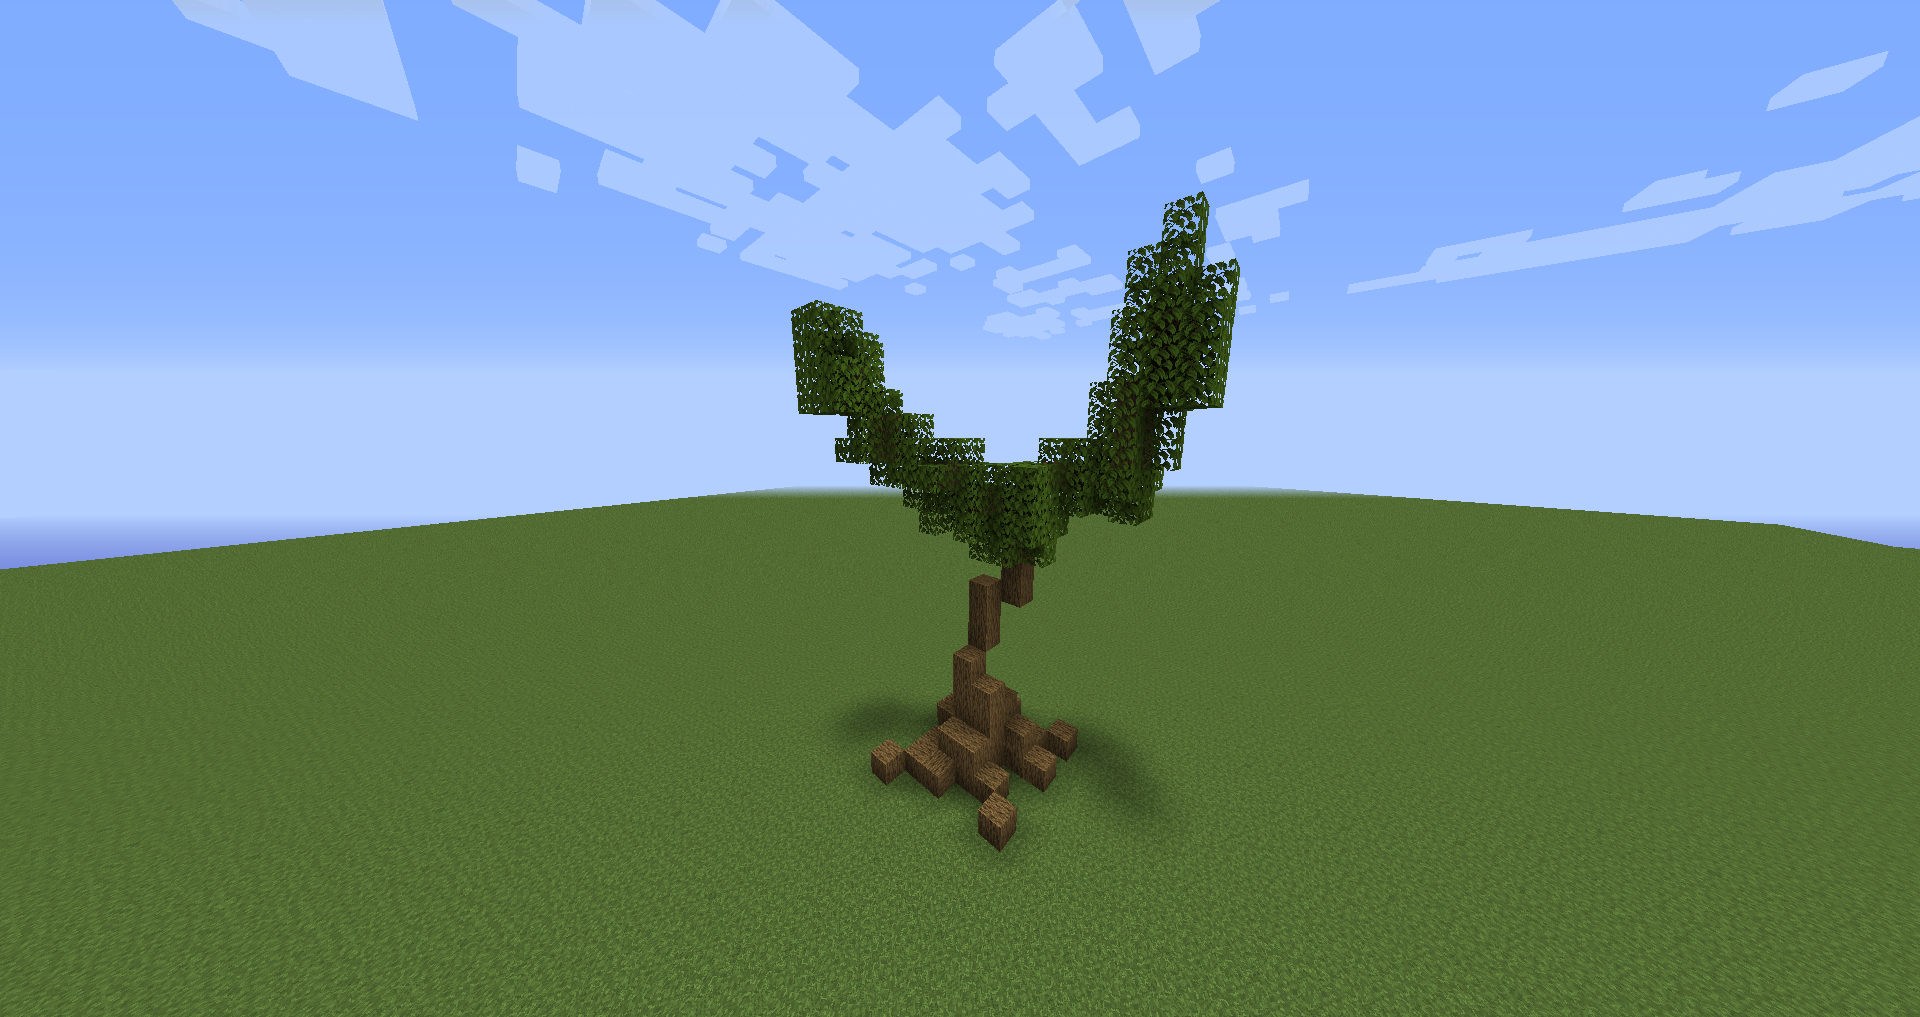 Tree Prototypes